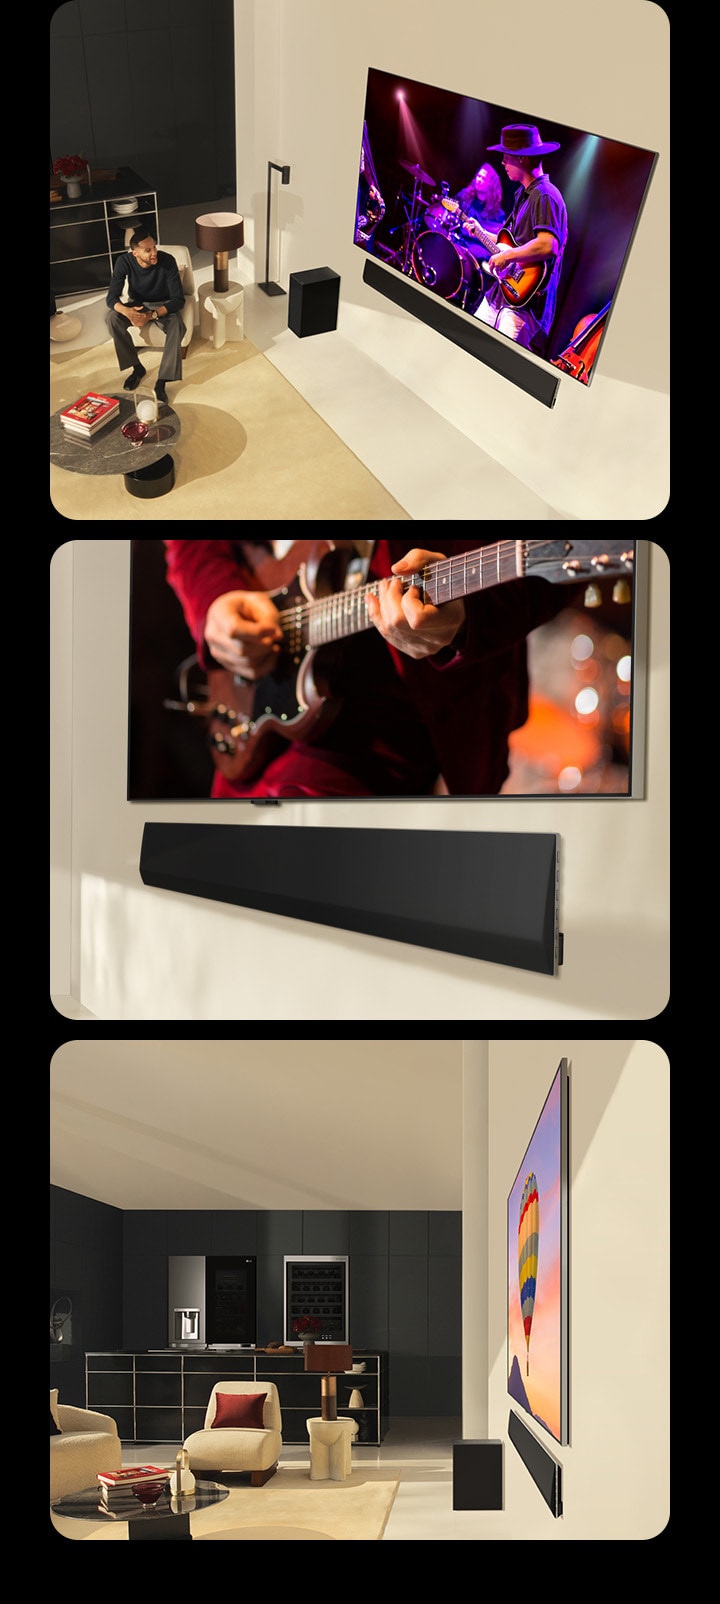 Três imagens são exibidas em sequência. Na primeira, um casal assistindo a um concerto em uma LG OLED evo G4 com a LG Soundbar SG10TY em perfeita harmonia em uma sala de estar moderna, enquanto a mesma imagem com um homem assistindo à TV é mostrada em um dispositivo móvel. E a imagem abaixo mostra uma perspectiva em ângulo da parte inferior de uma LG OLED TV e de uma LG Soundbar. E a outra mostra uma visão de perfil lateral de uma LG OLED evo G4 e de uma LG Soundbar SG10TY, ambas com dimensões incrivelmente finas e praticamente sem lacunas contra a parede. 